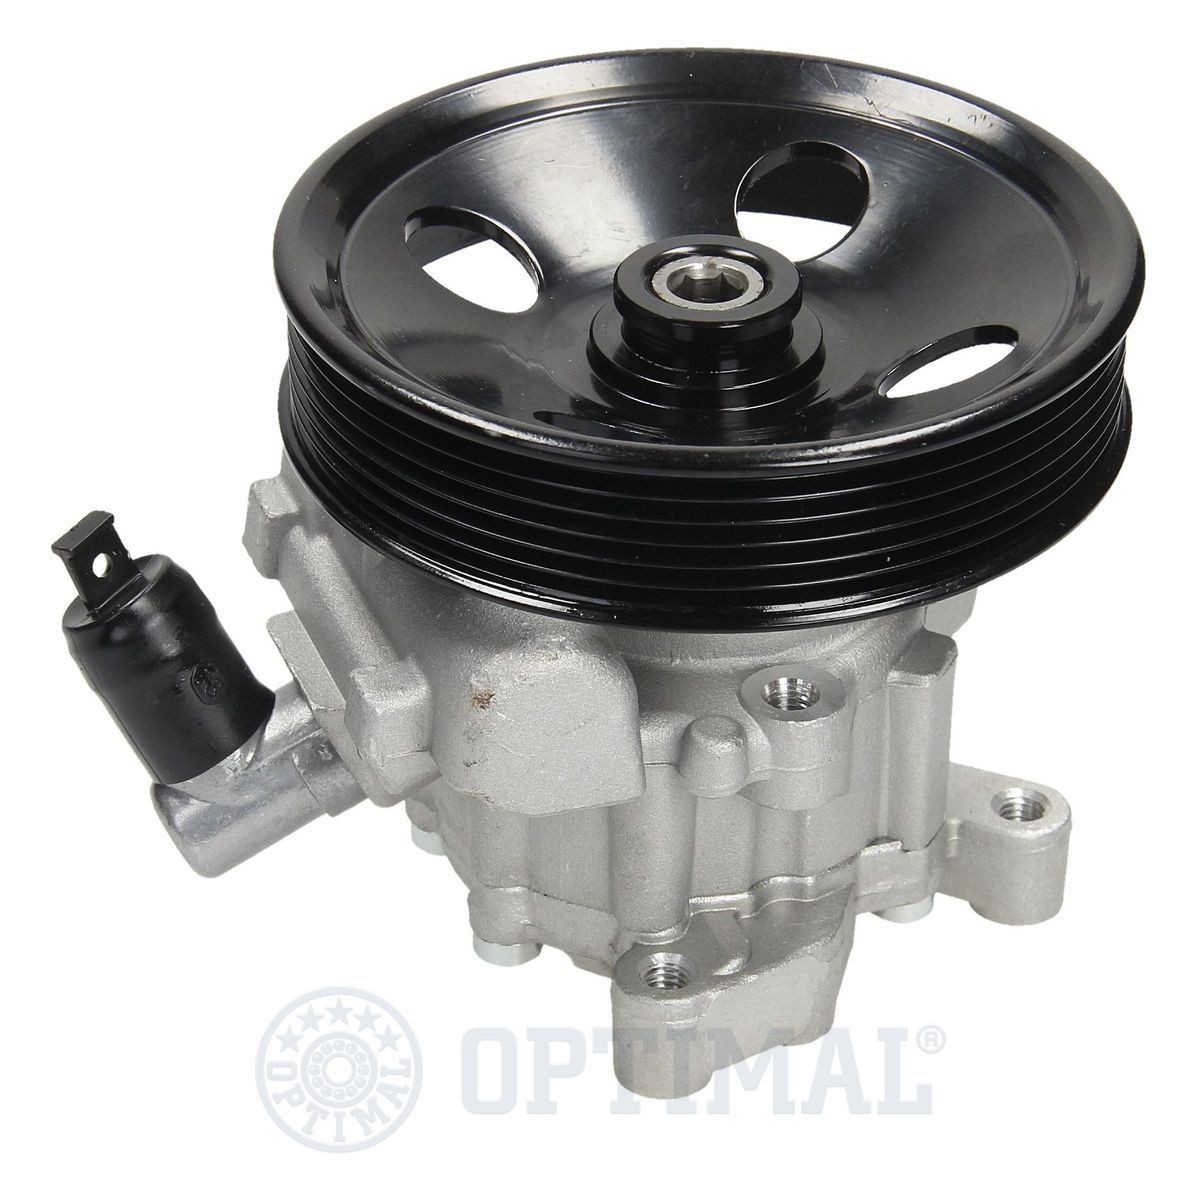 OPTIMAL HP-746 Power steering pump 004 466 93 01